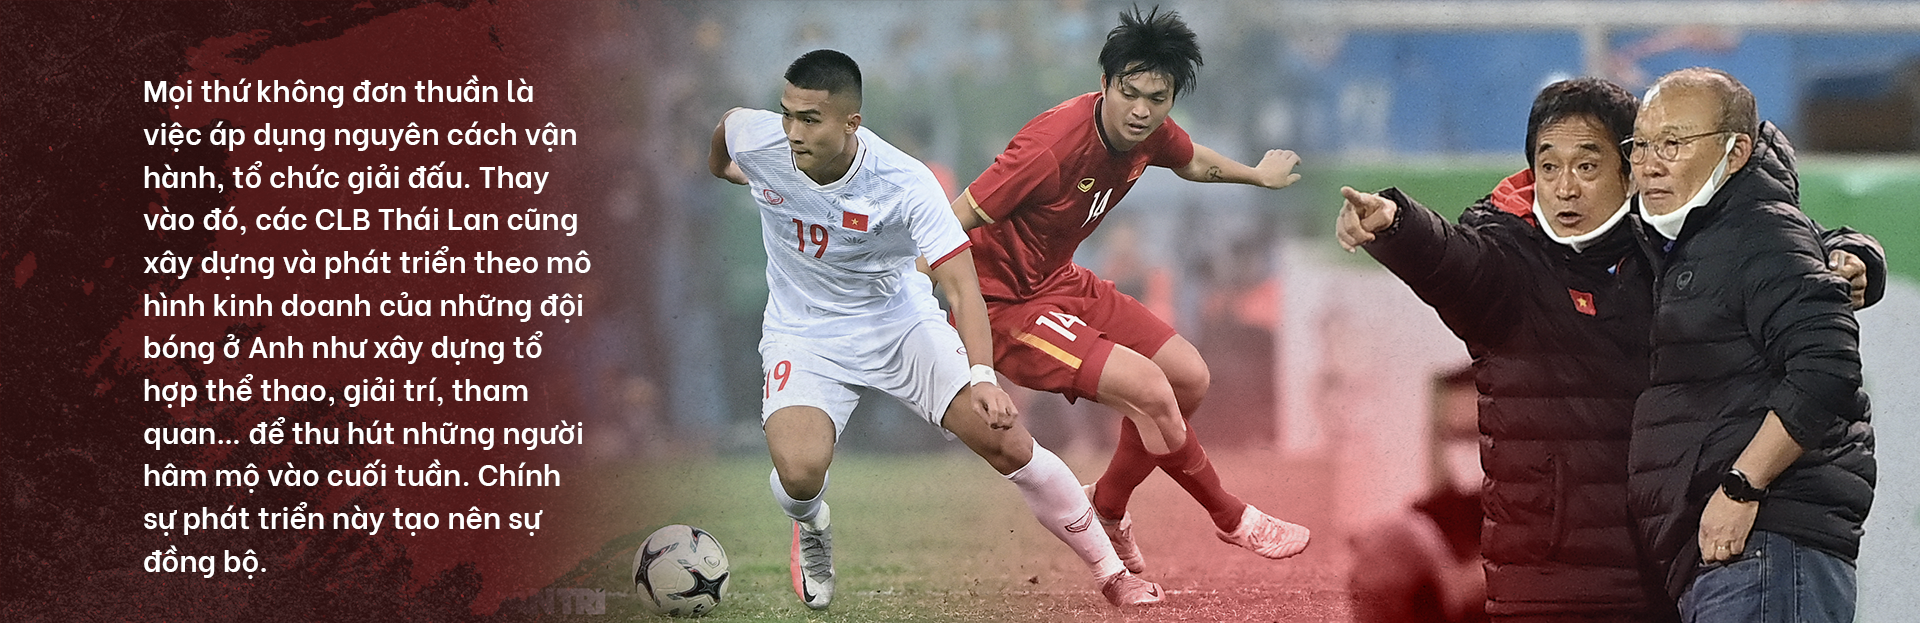 Bóng đá Việt Nam " Một mình một kiểu" & sự hy sinh " khó hiểu"